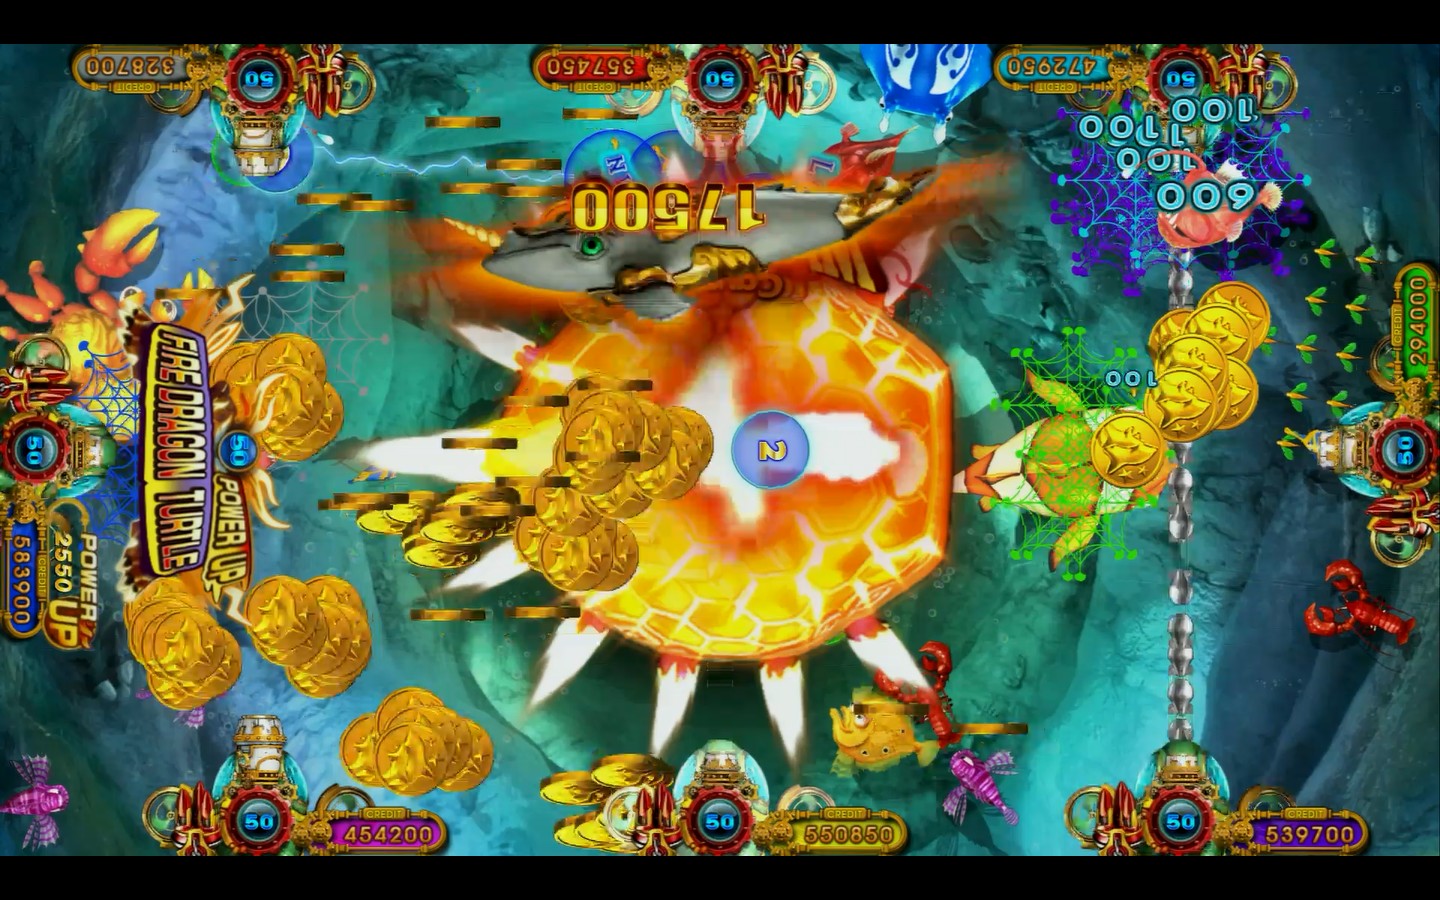 Ocean-king-3-Plus-Blackbeards-Fury-Kit-IGS-Hot-Sale-Fishing-Game-Entertainment-Fishing-Casino-Shooting-Fish-Game-Machine-fish-game-softwar-Tomy-Arcade